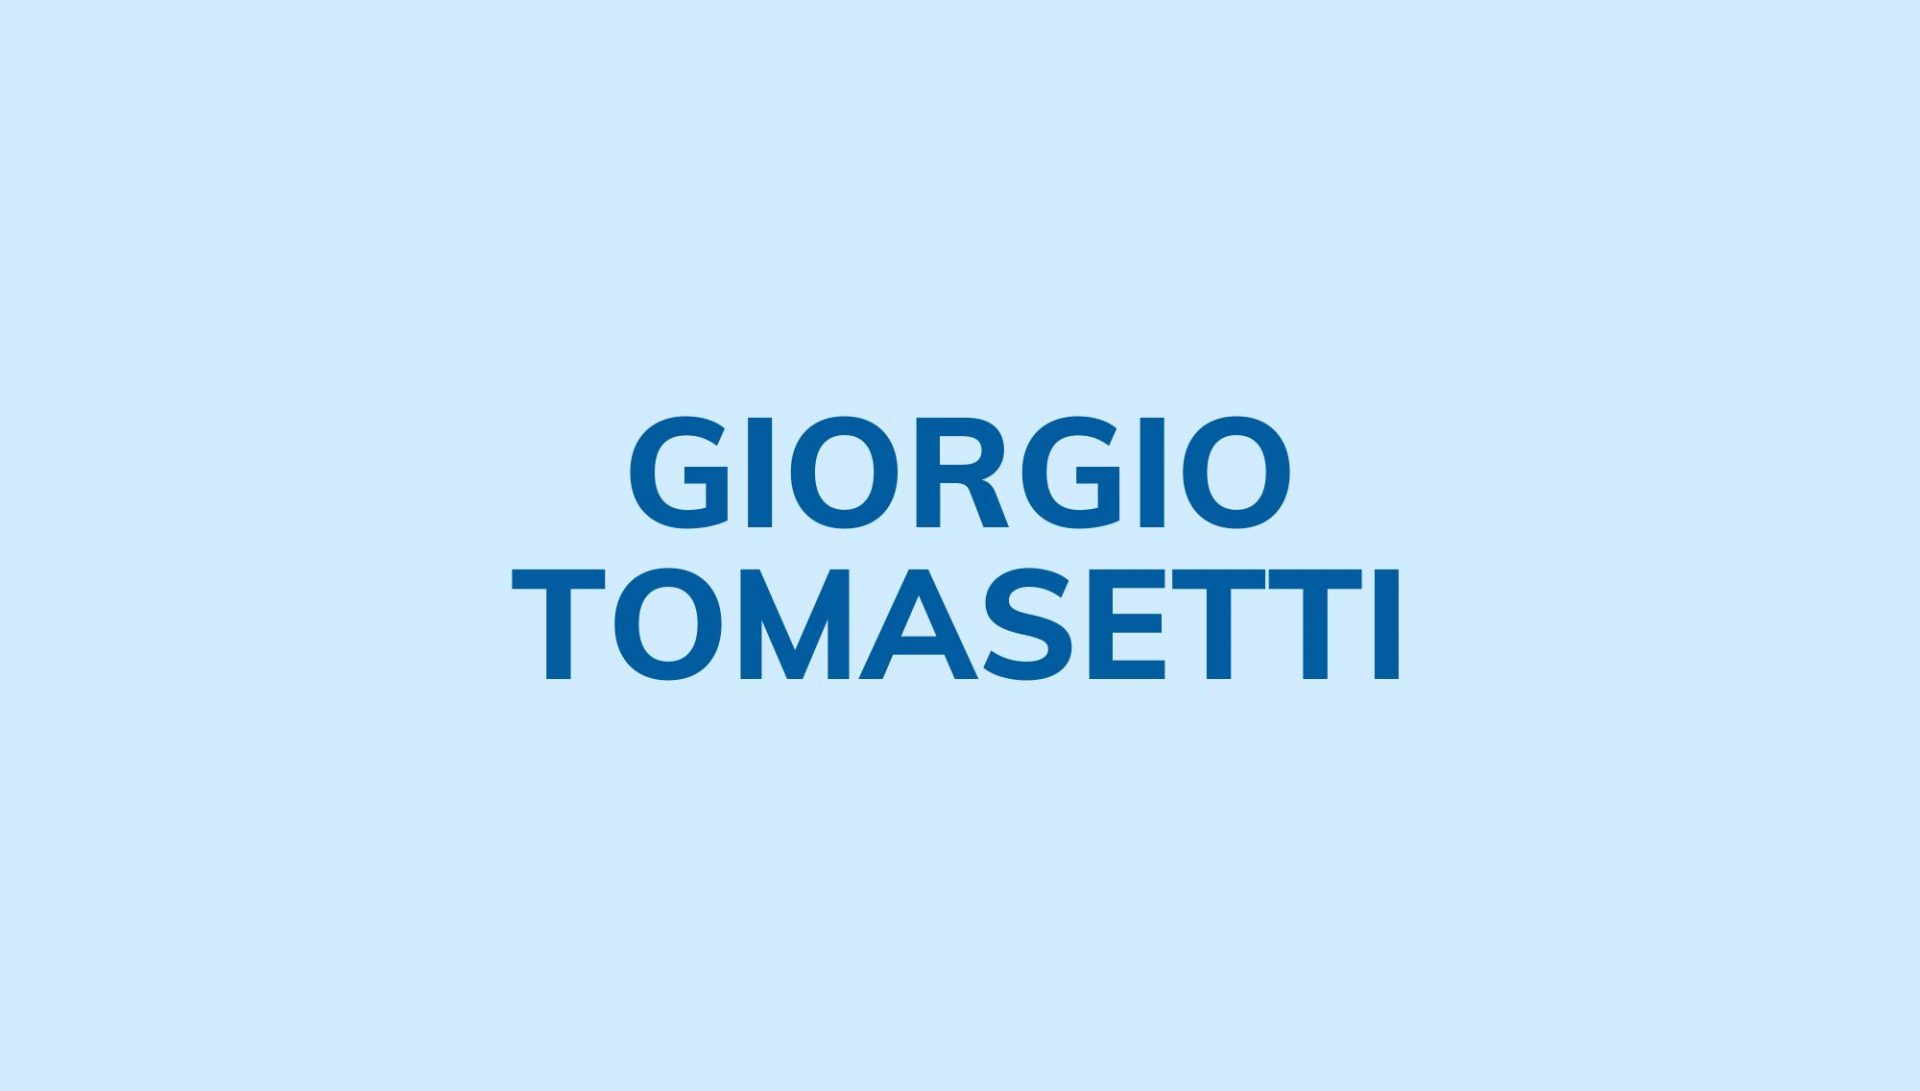 Giorgio Tomasetti